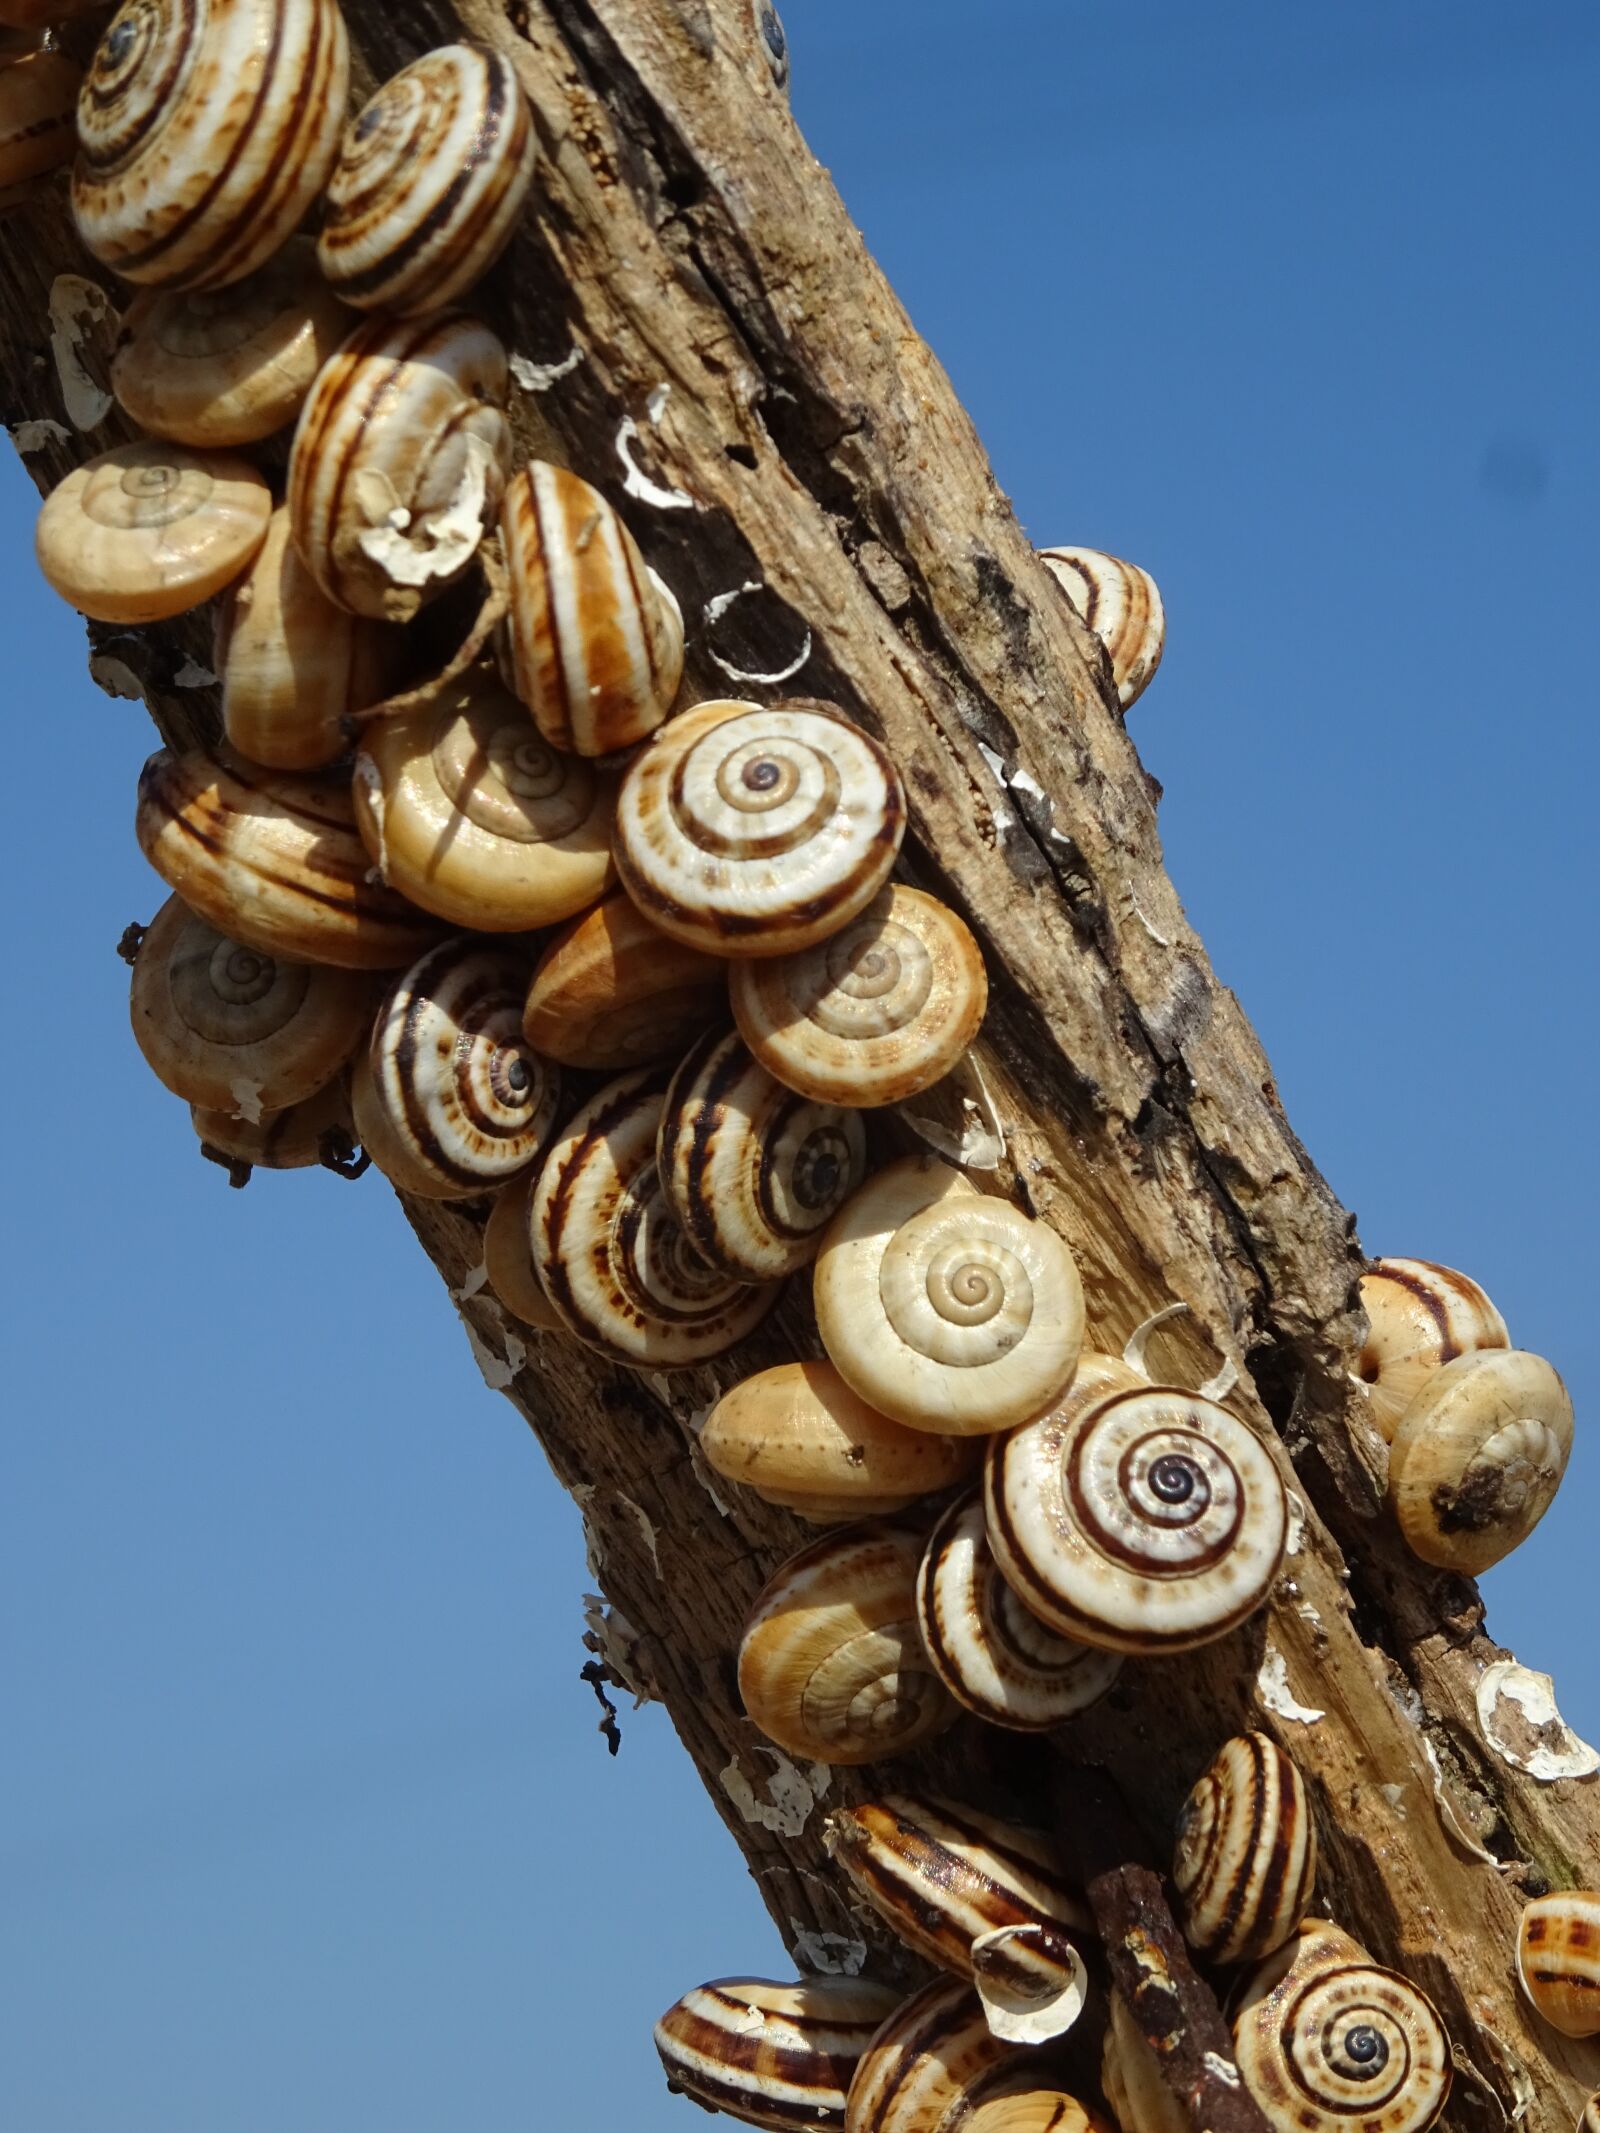 Sony DSC-HX60 sample photo. Snails, branch, snail shell photography